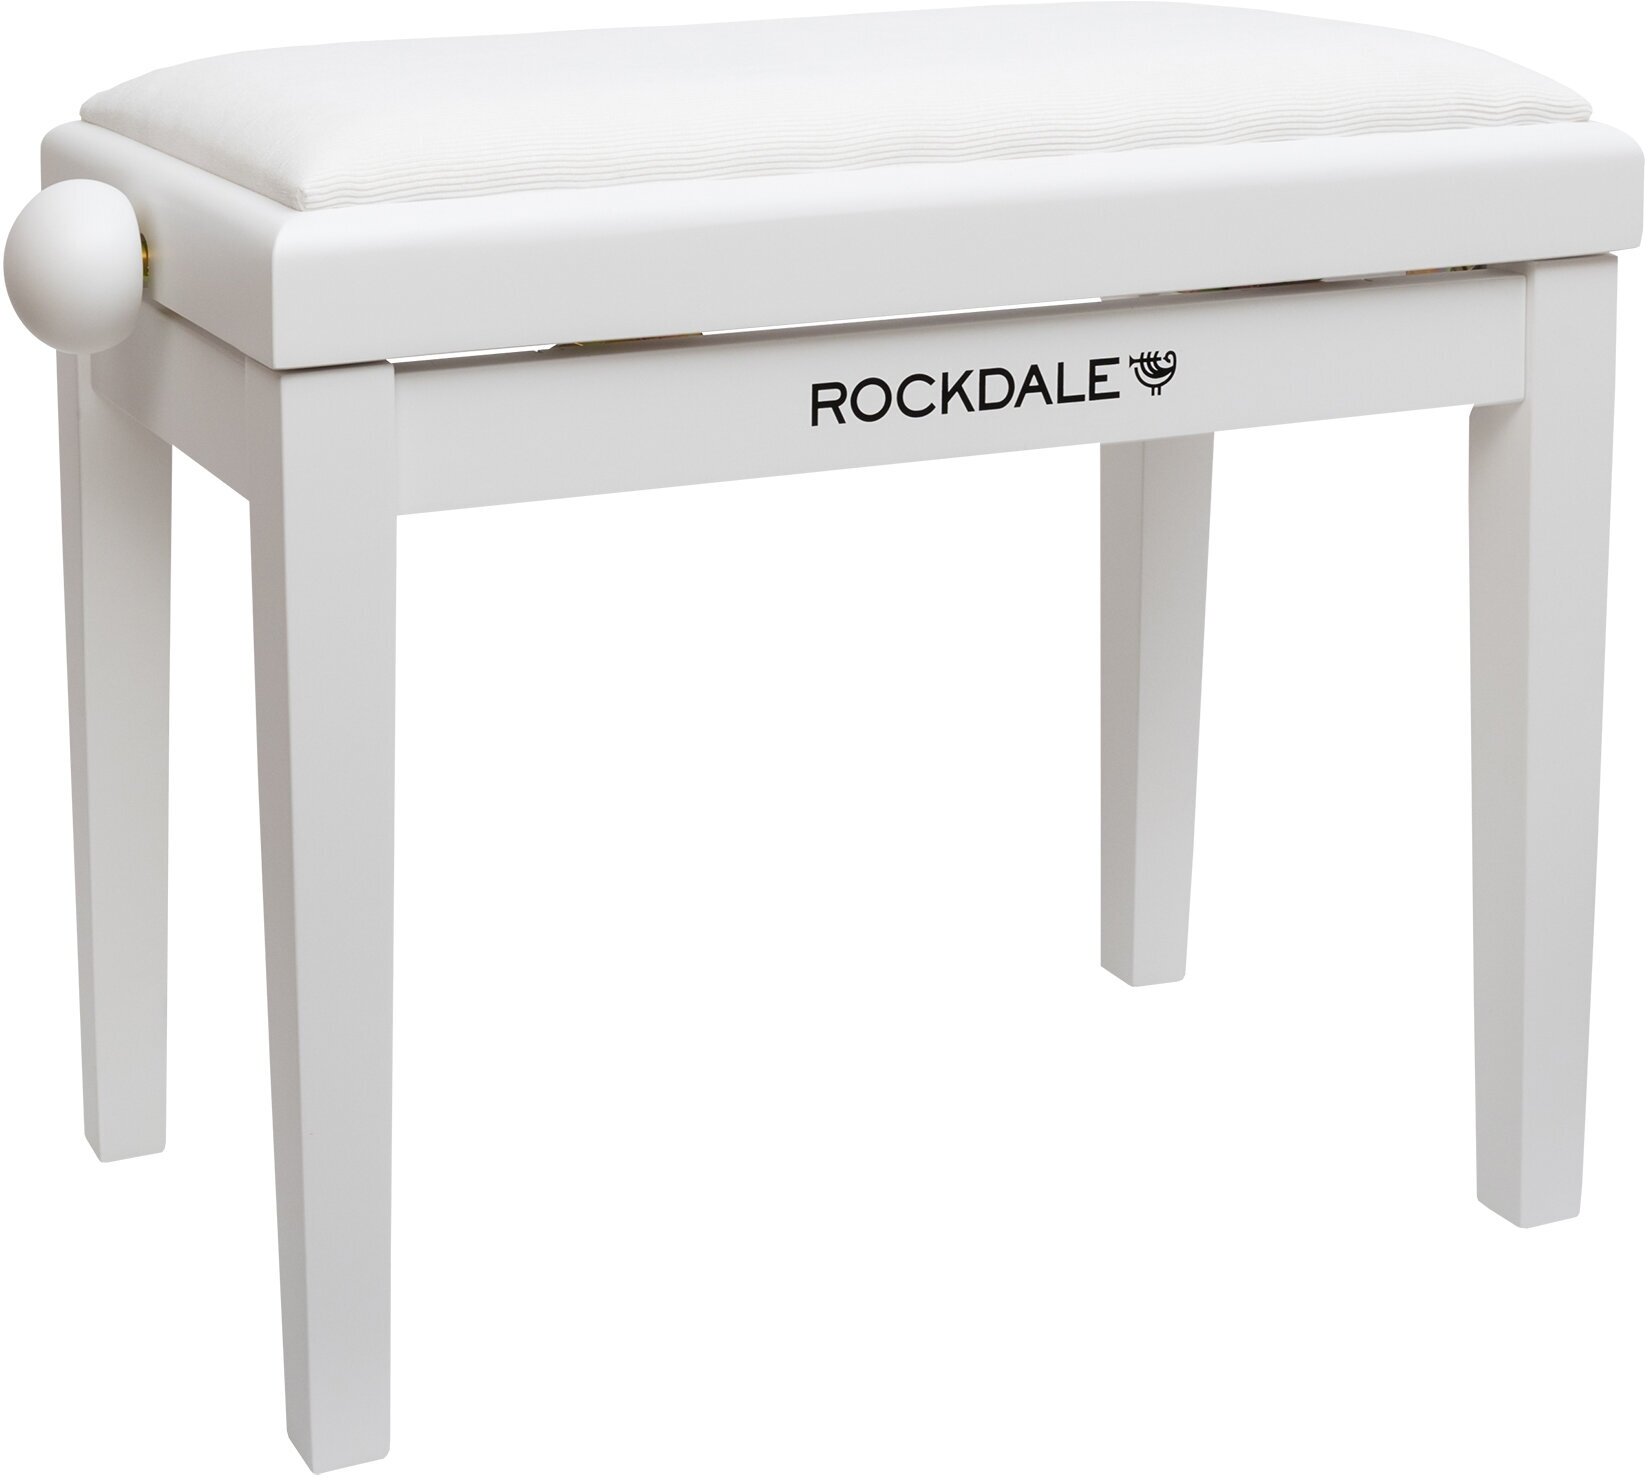 ROCKDALE RHAPSODY 131 SV WHITE деревянная банкетка с регулировкой высоты цвет корпуса белый сиденье вельвет в рубчик белый